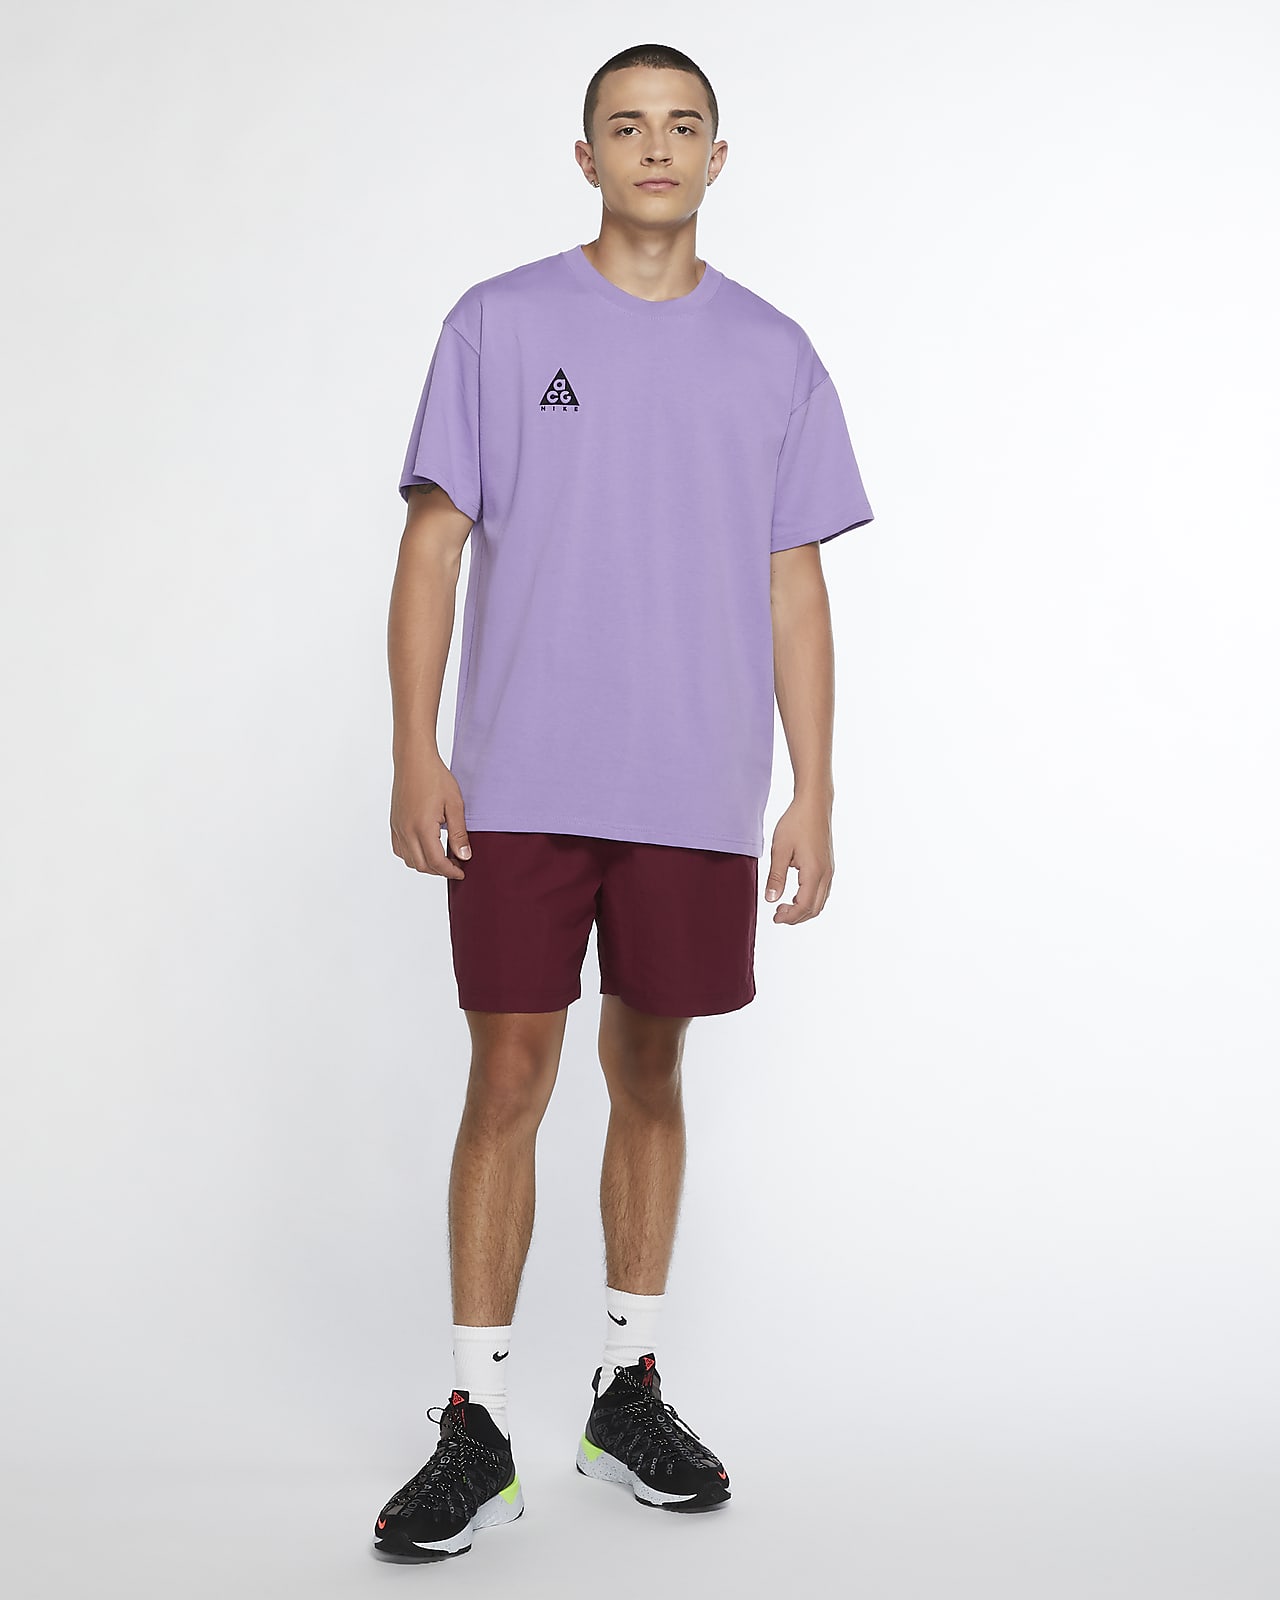 atomic violet shirt